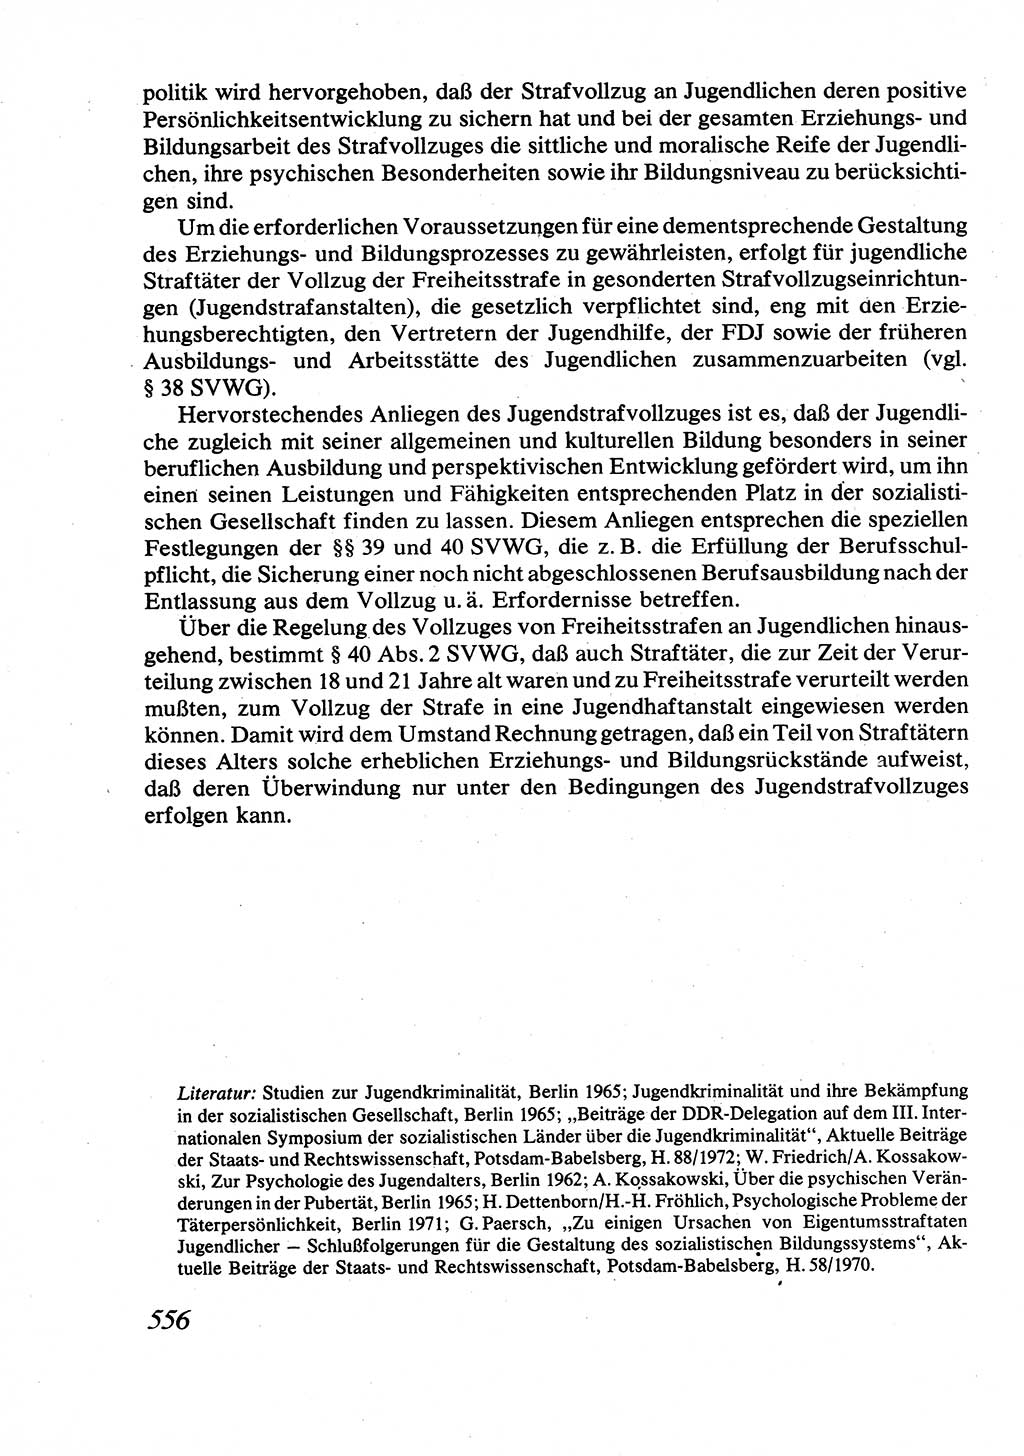 Strafrecht [Deutsche Demokratische Republik (DDR)], Allgemeiner Teil, Lehrbuch 1976, Seite 556 (Strafr. DDR AT Lb. 1976, S. 556)